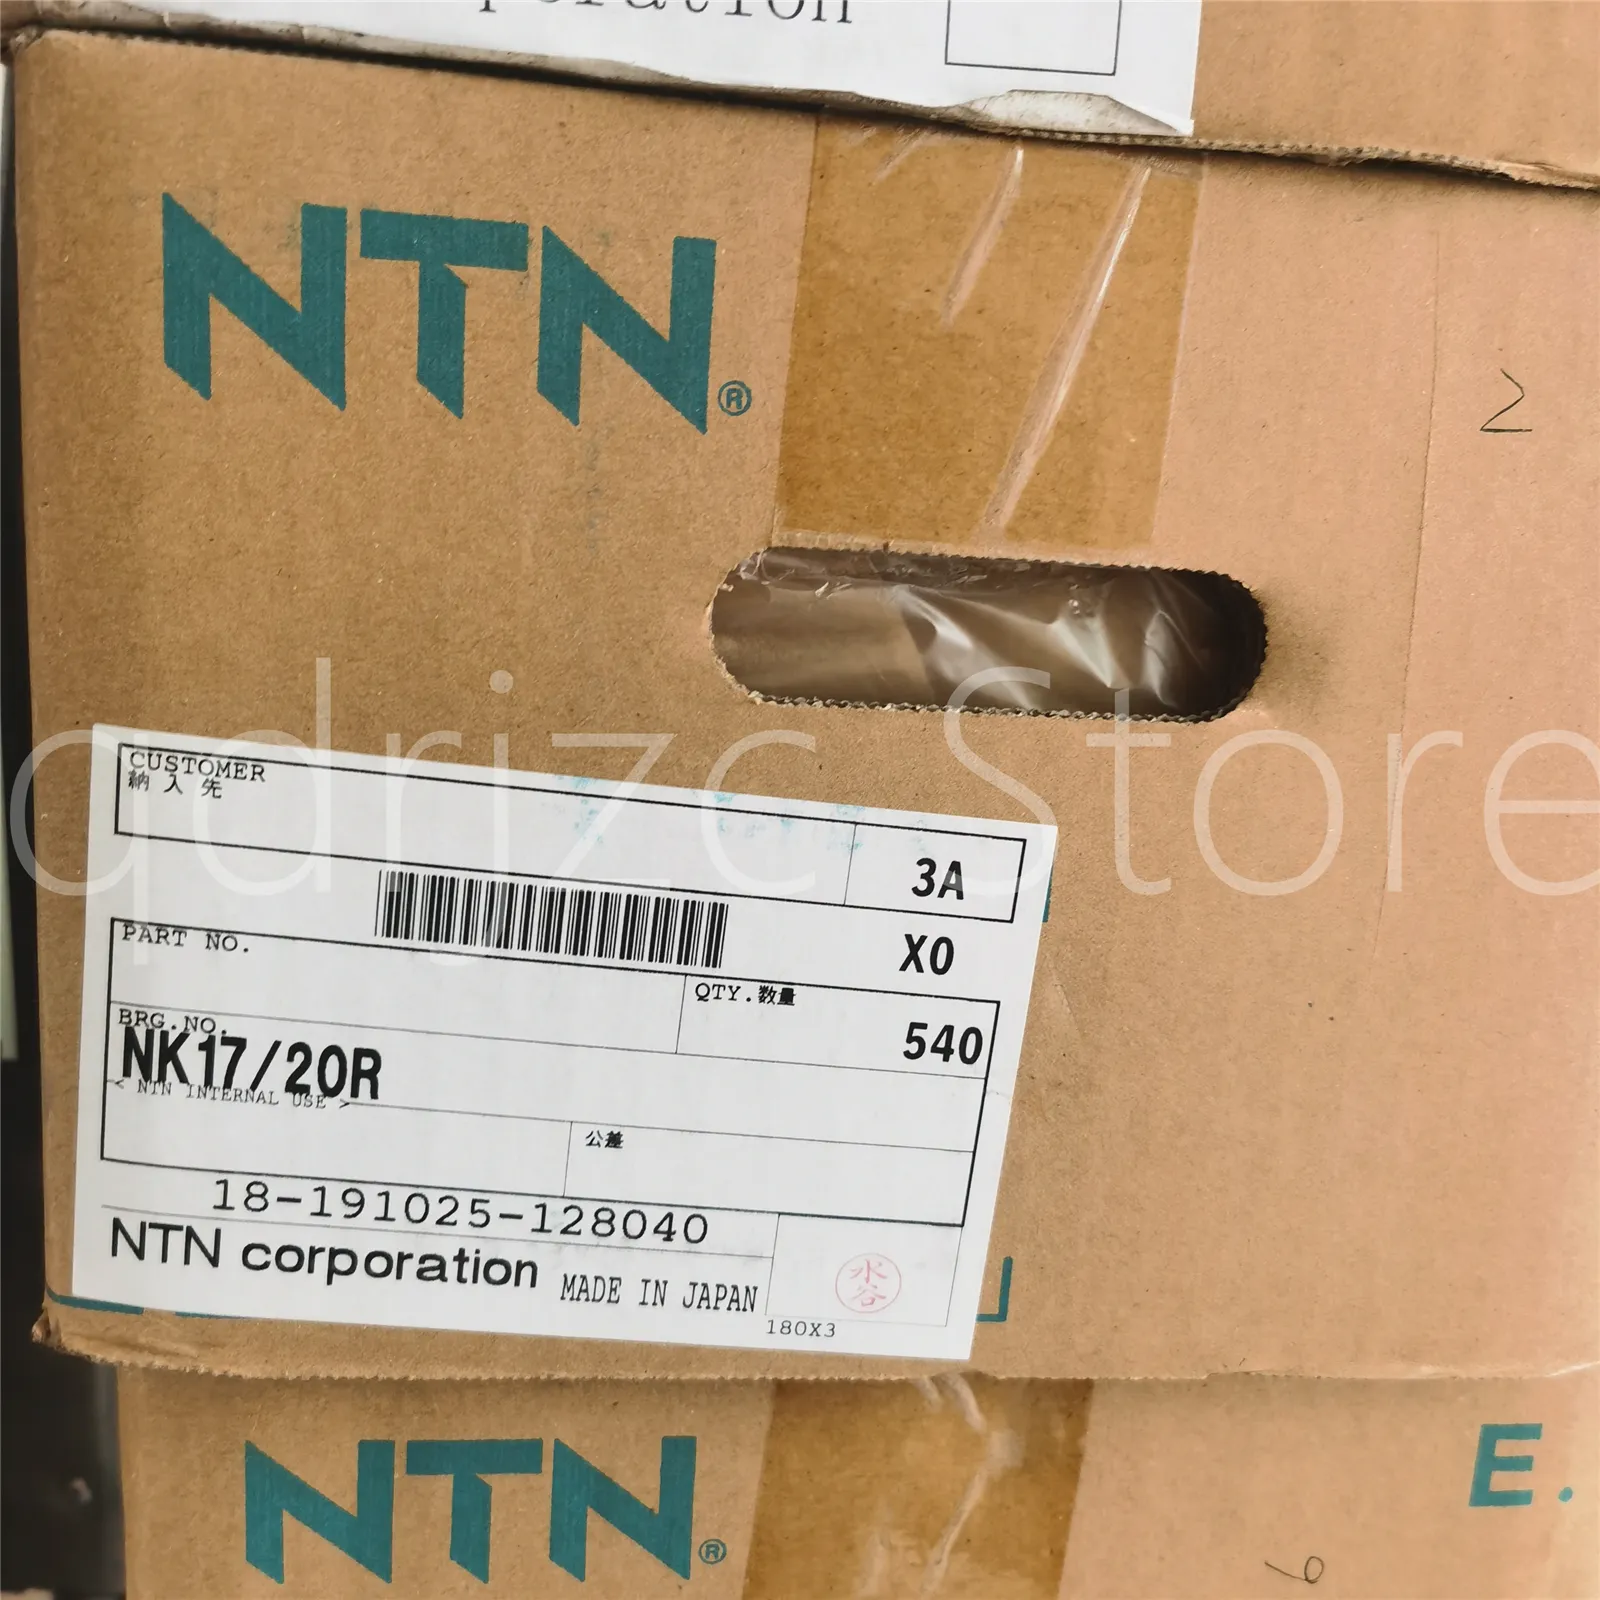 1 cuscinetto a rullini NTN NK17/20R = NK17/20-XL TAF172520OG RNA172520 con scanalatura olio foro olio 17mm 25mm 20mm